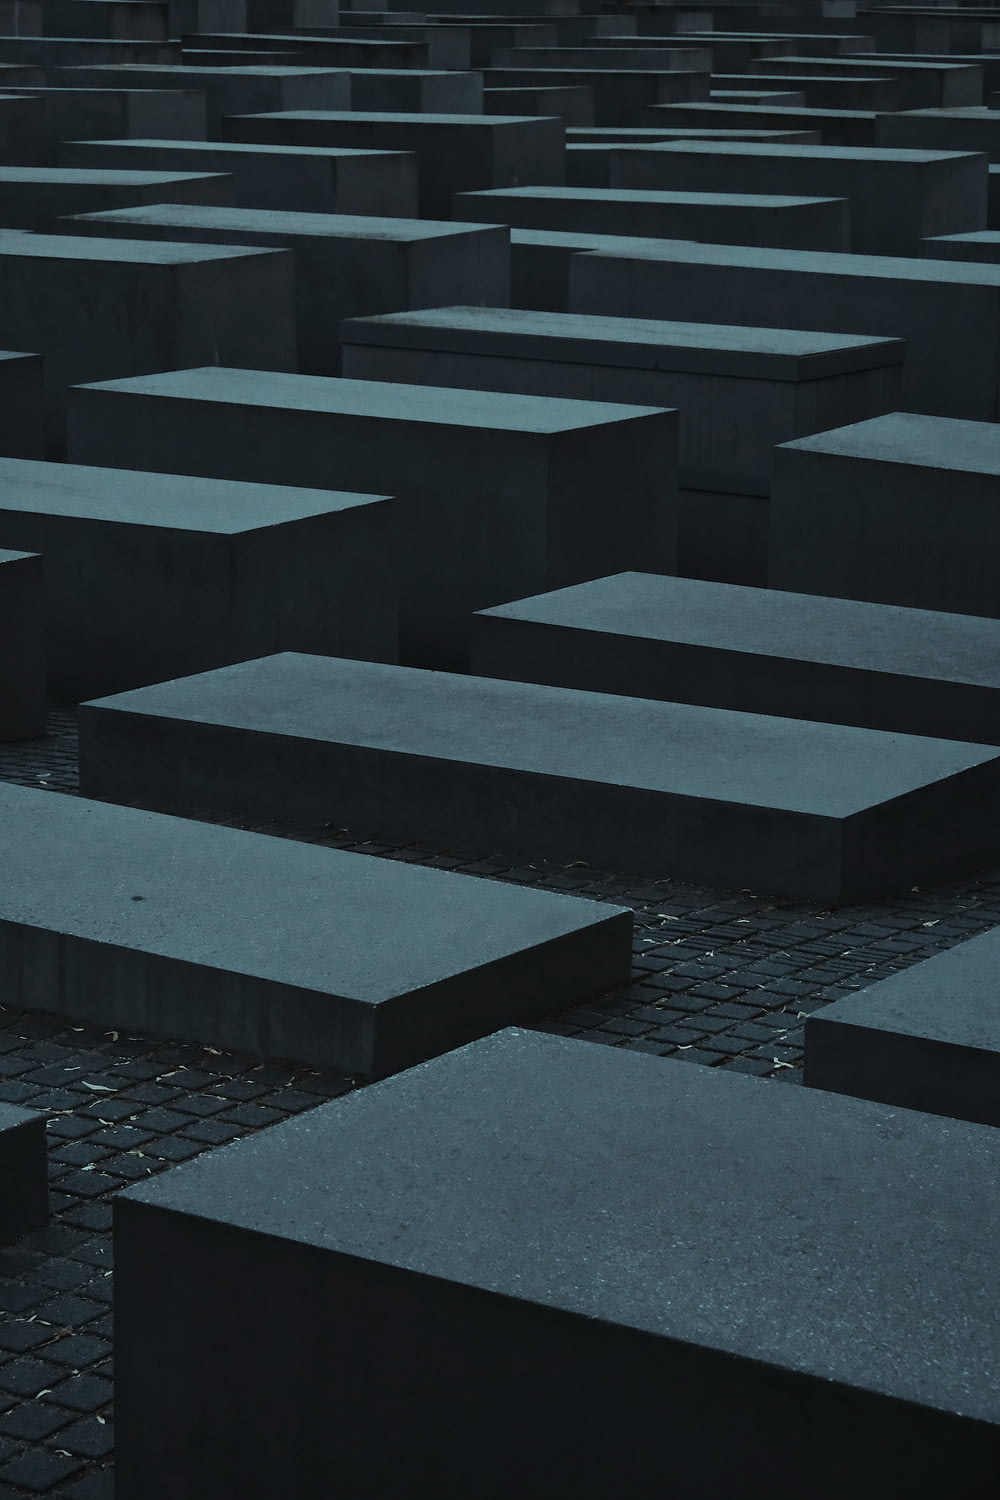 gray and black concrete blocks